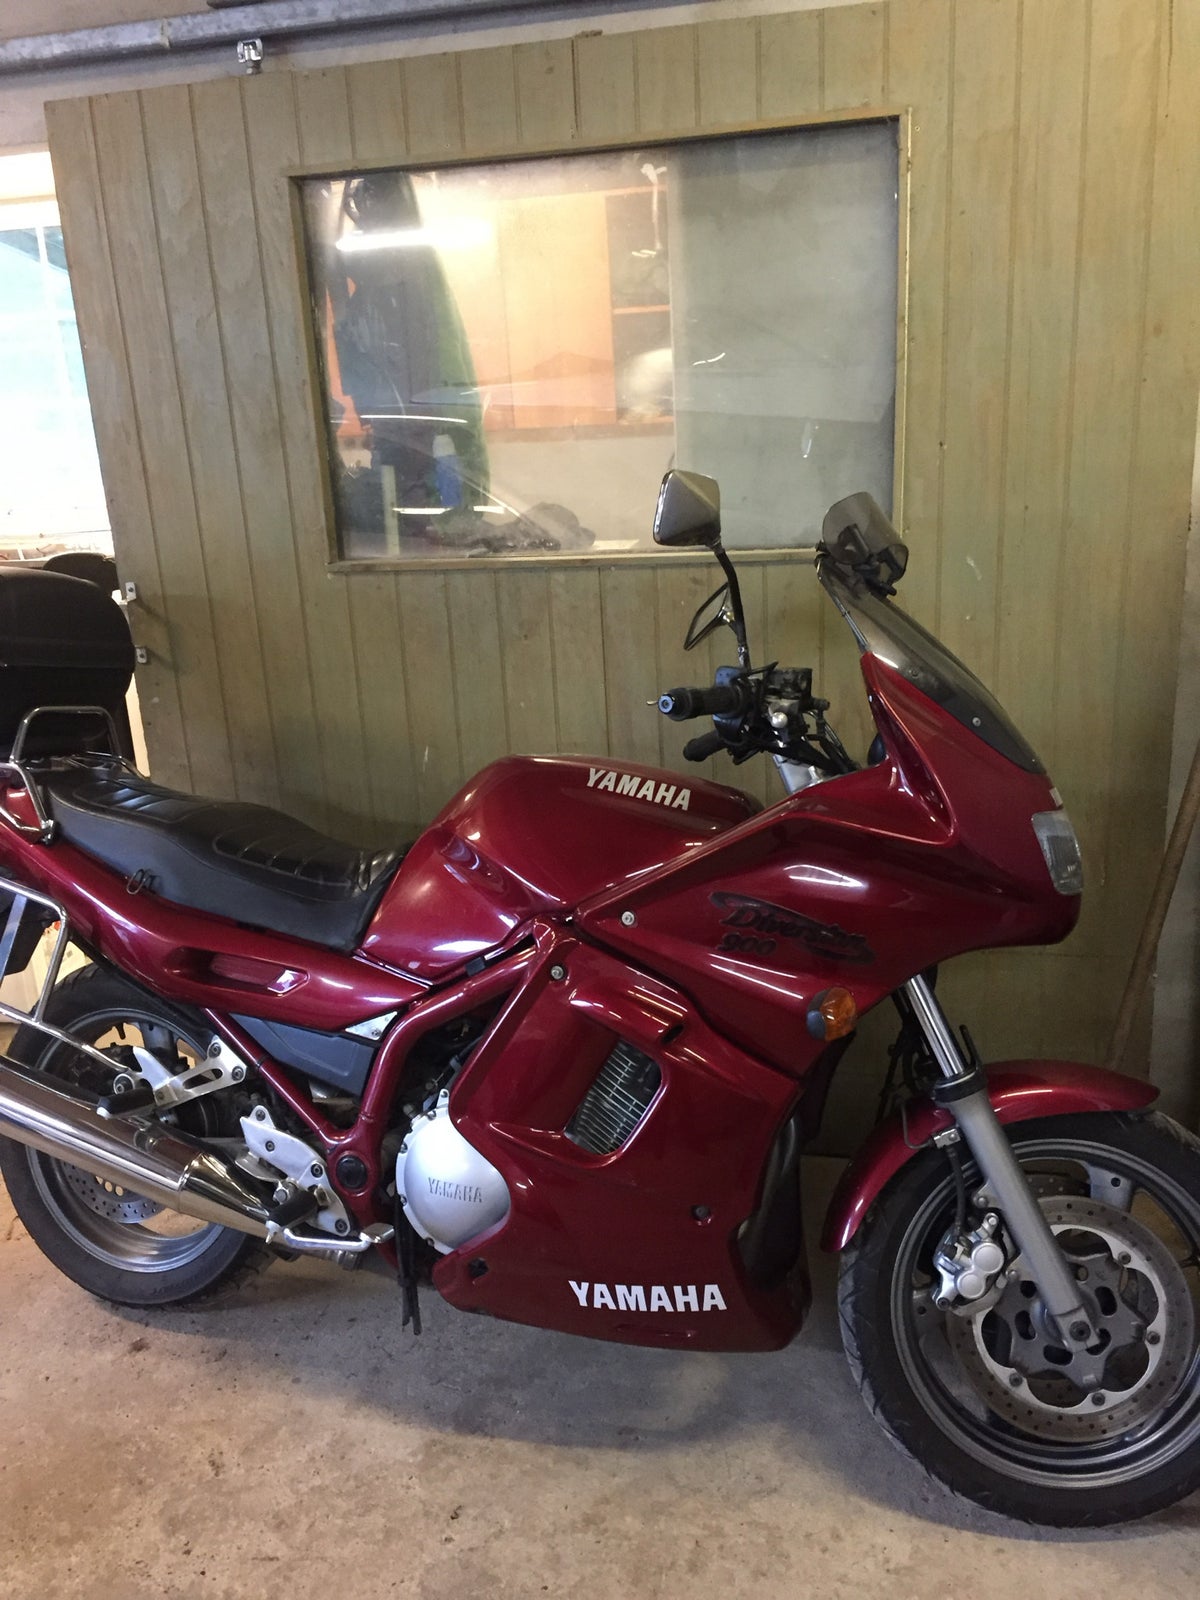 Yamaha, 900 ccm, 95 hk